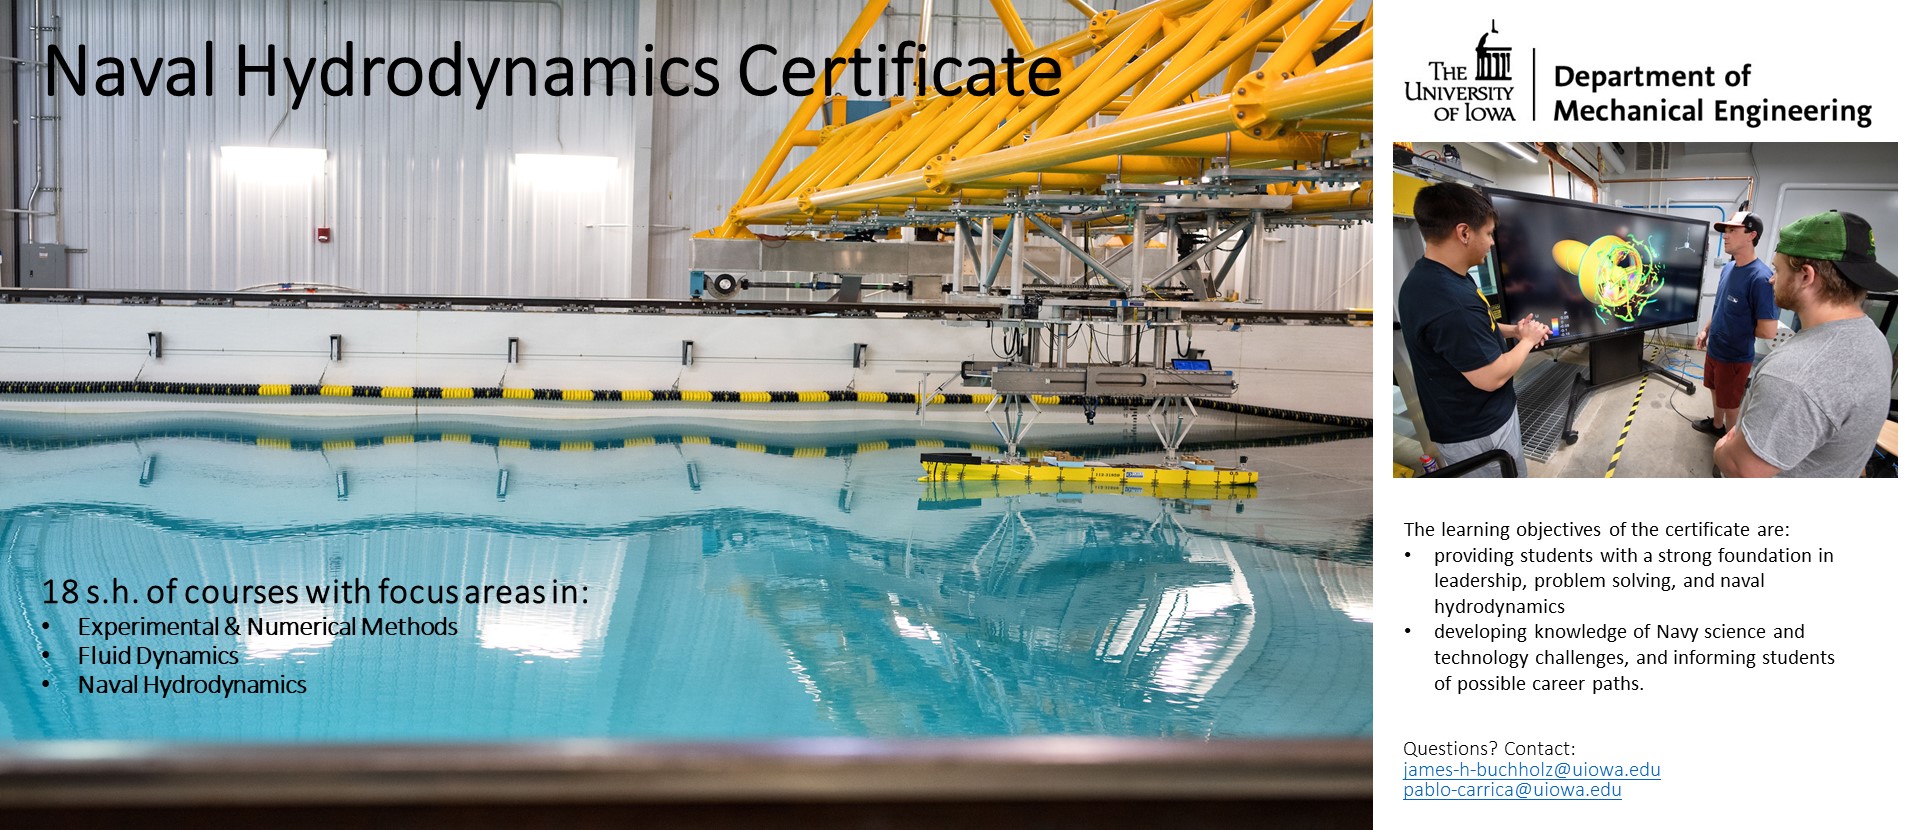 Naval Hydrodynamics Certificate